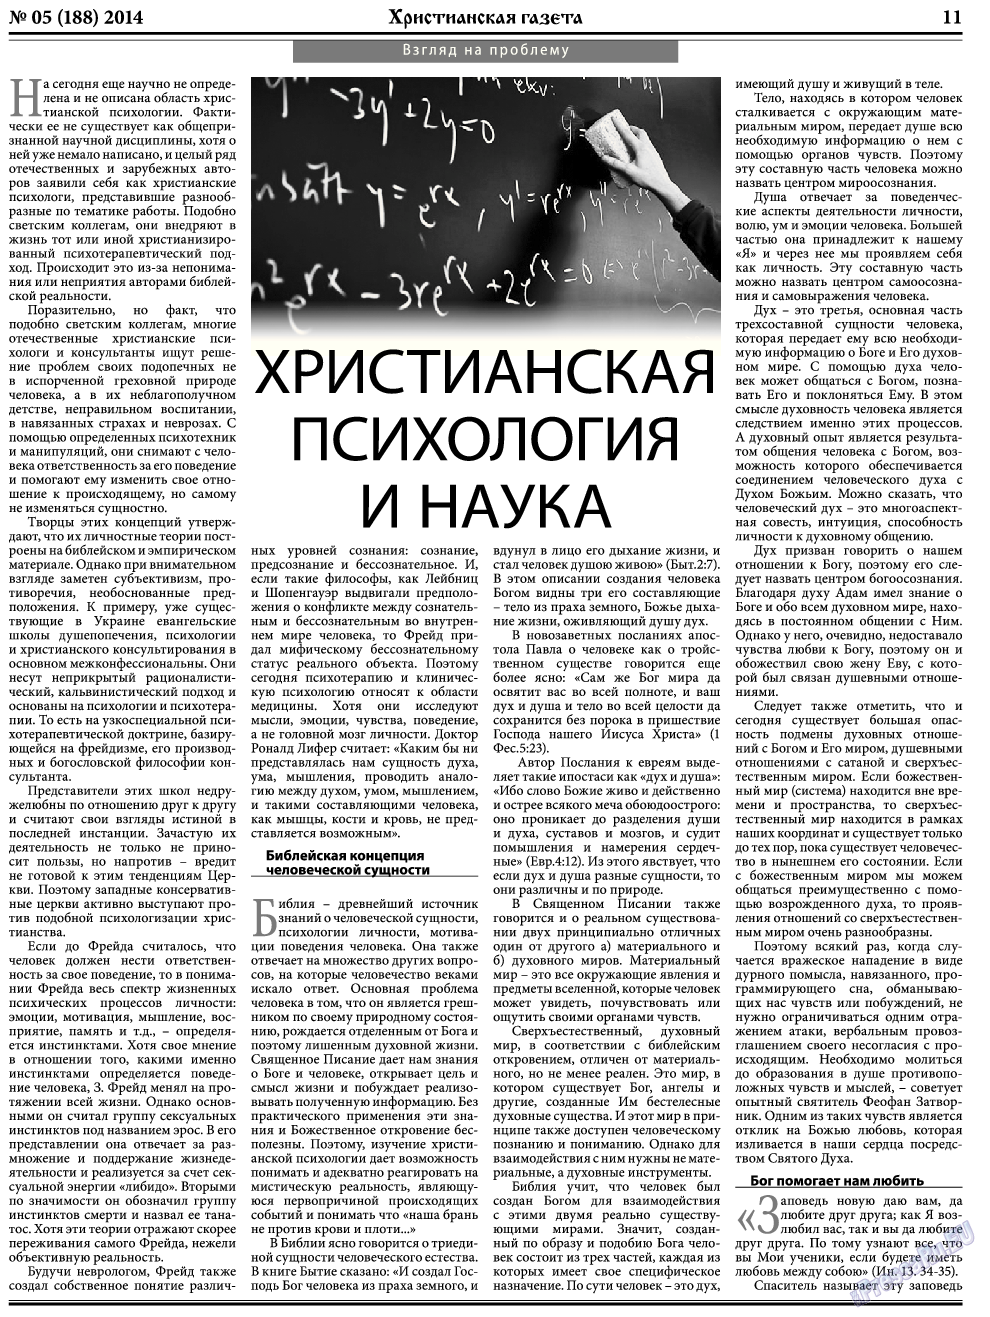 Христианская газета, газета. 2014 №5 стр.11